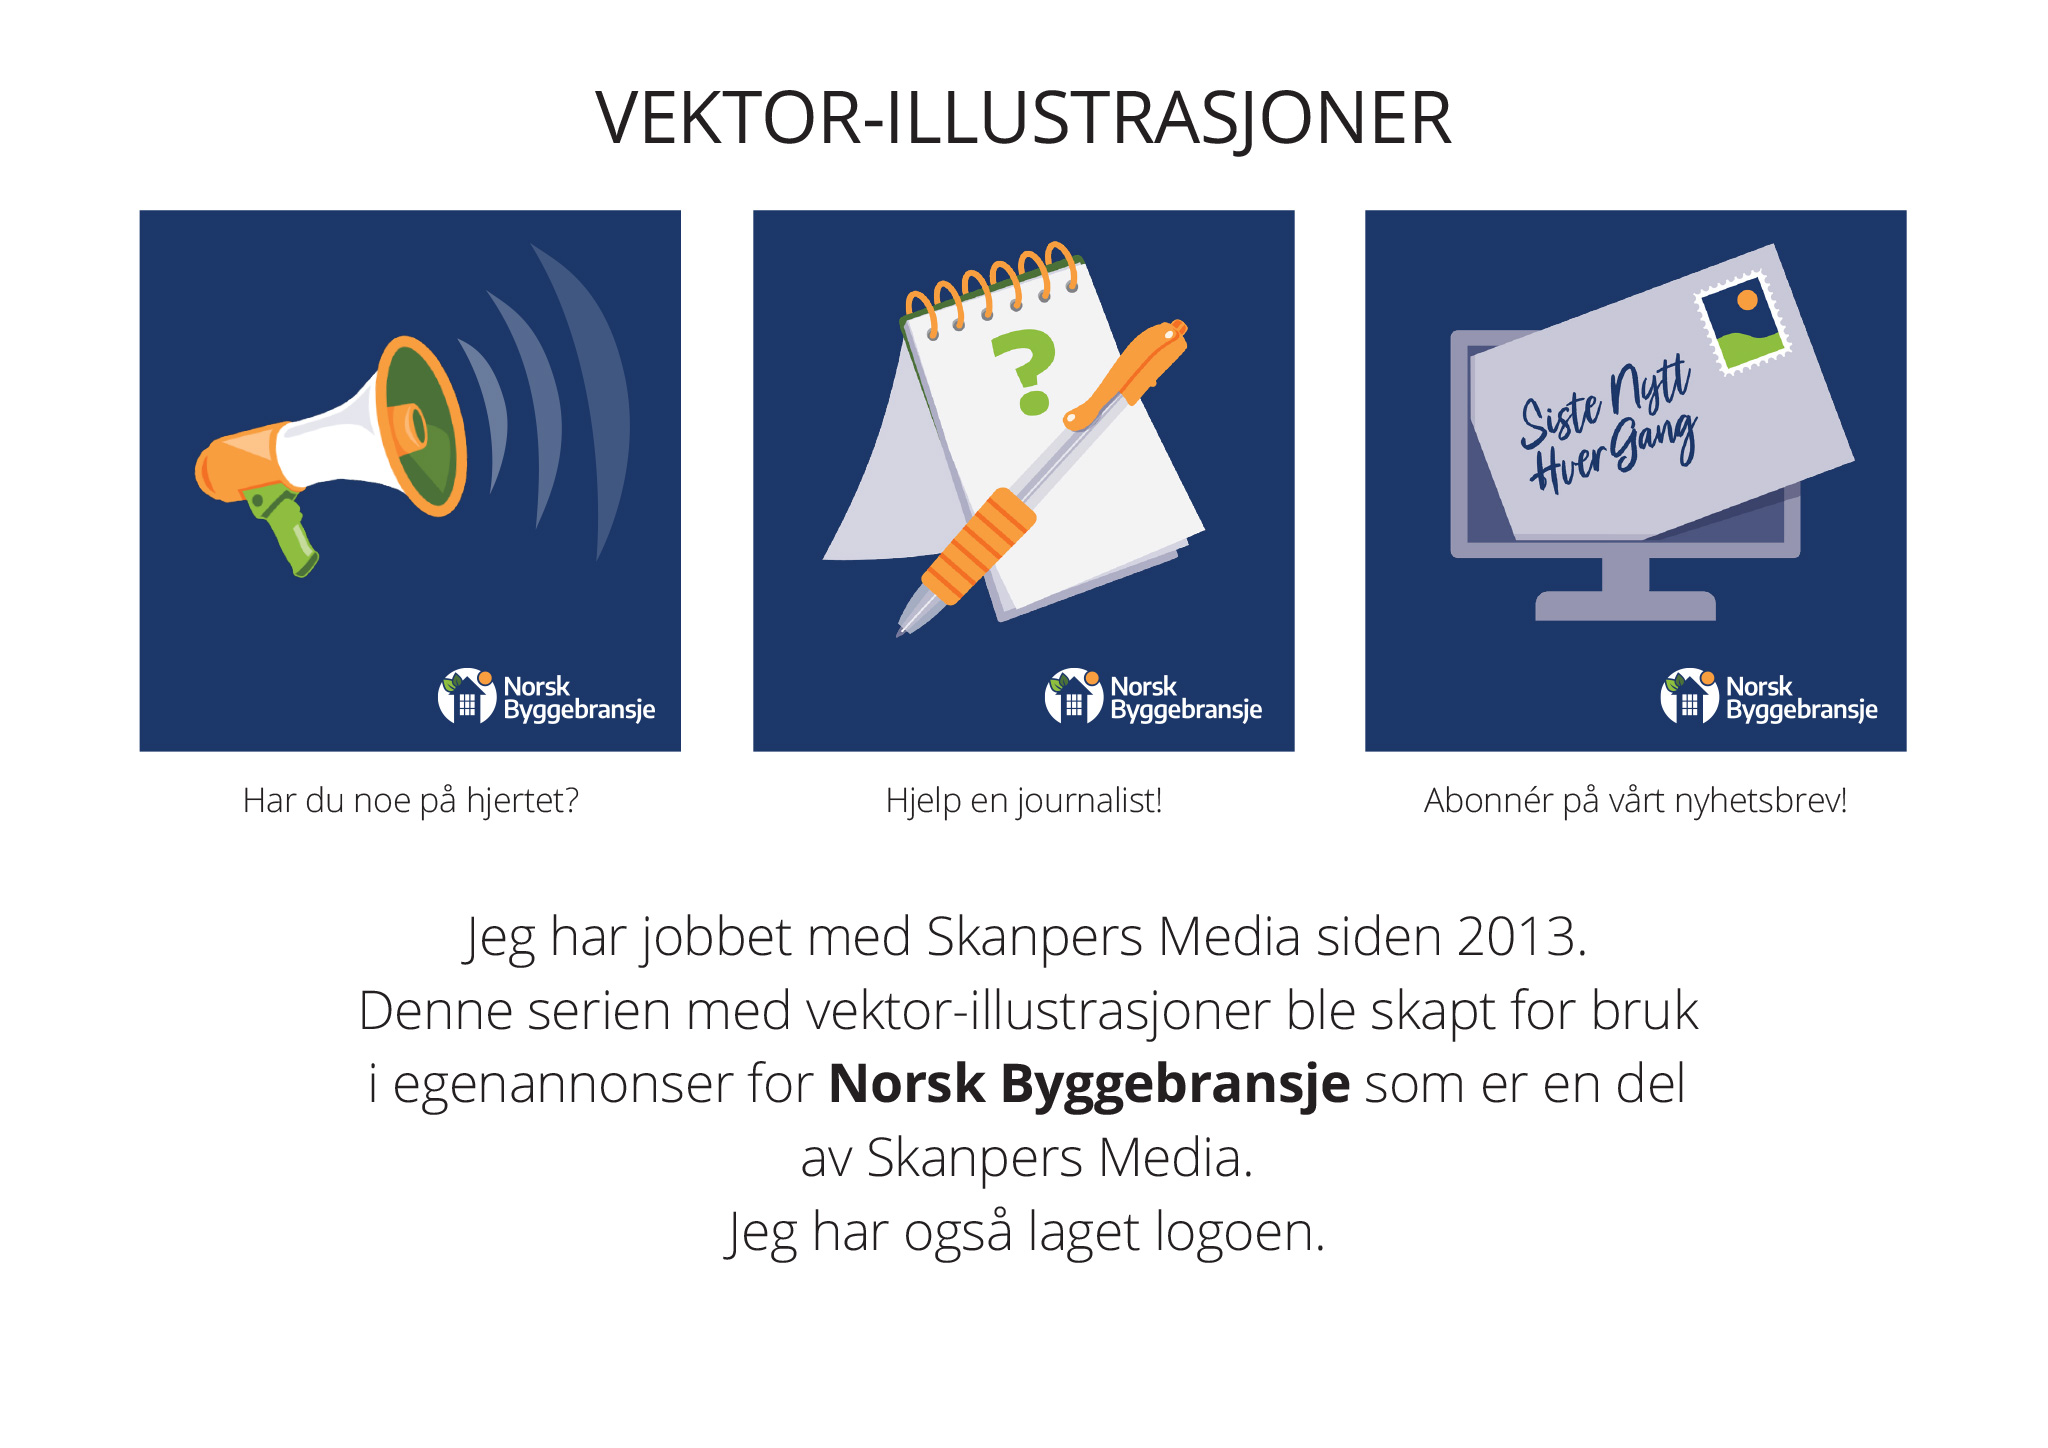 Vektor illustrasjoner for Norsk Byggebransje